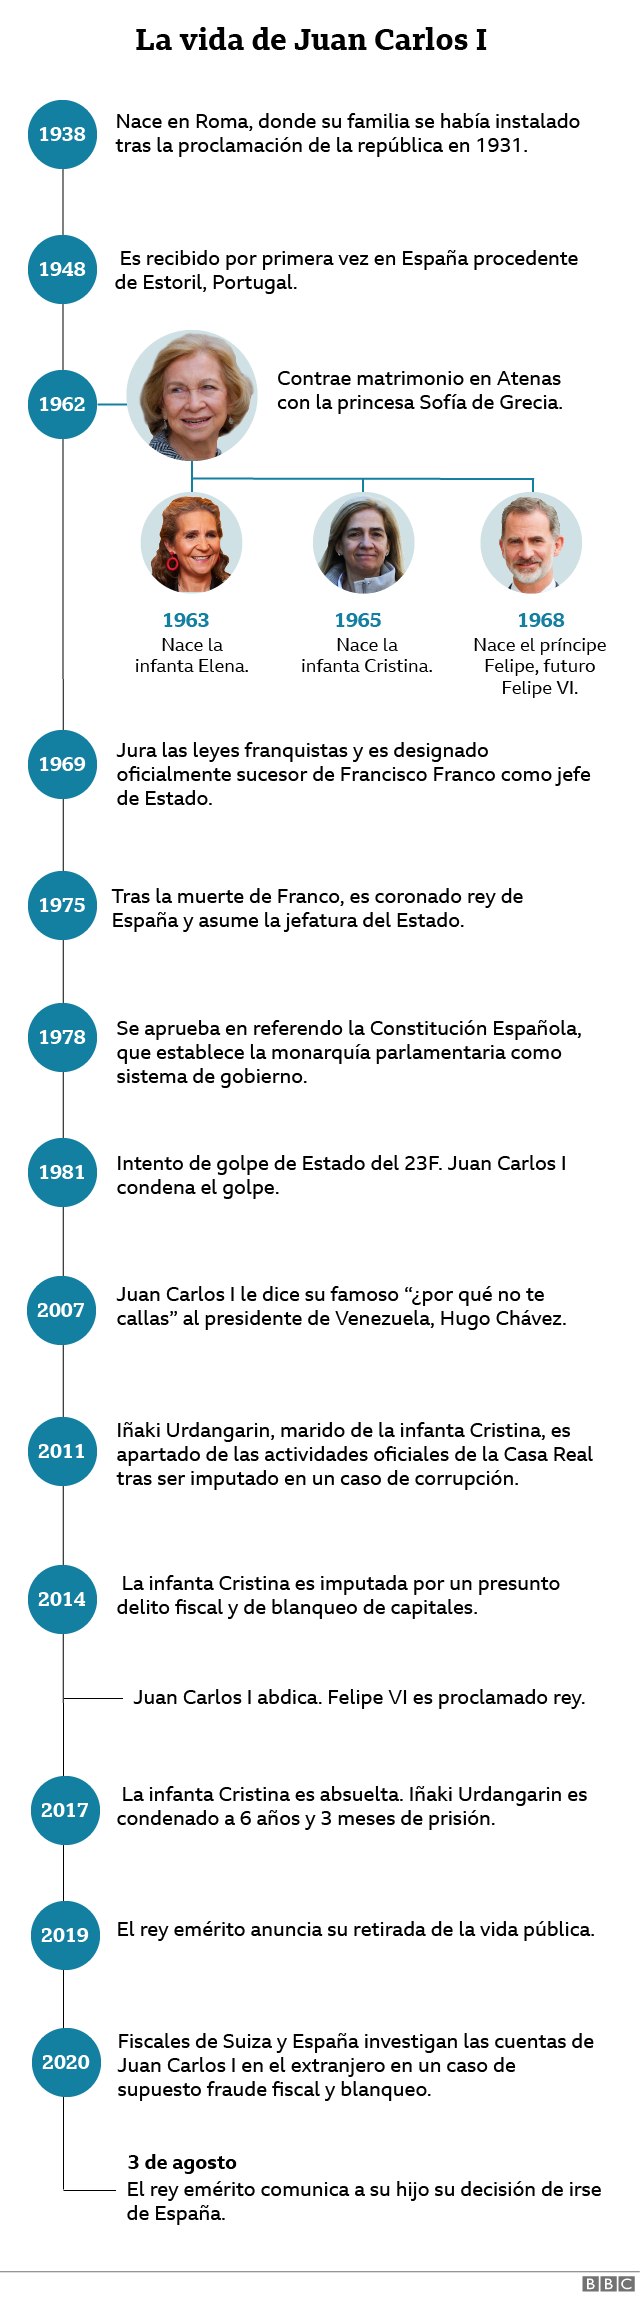 cronología de la vida de Juan Carlos I desde su nacimiento hasta su retirada de España